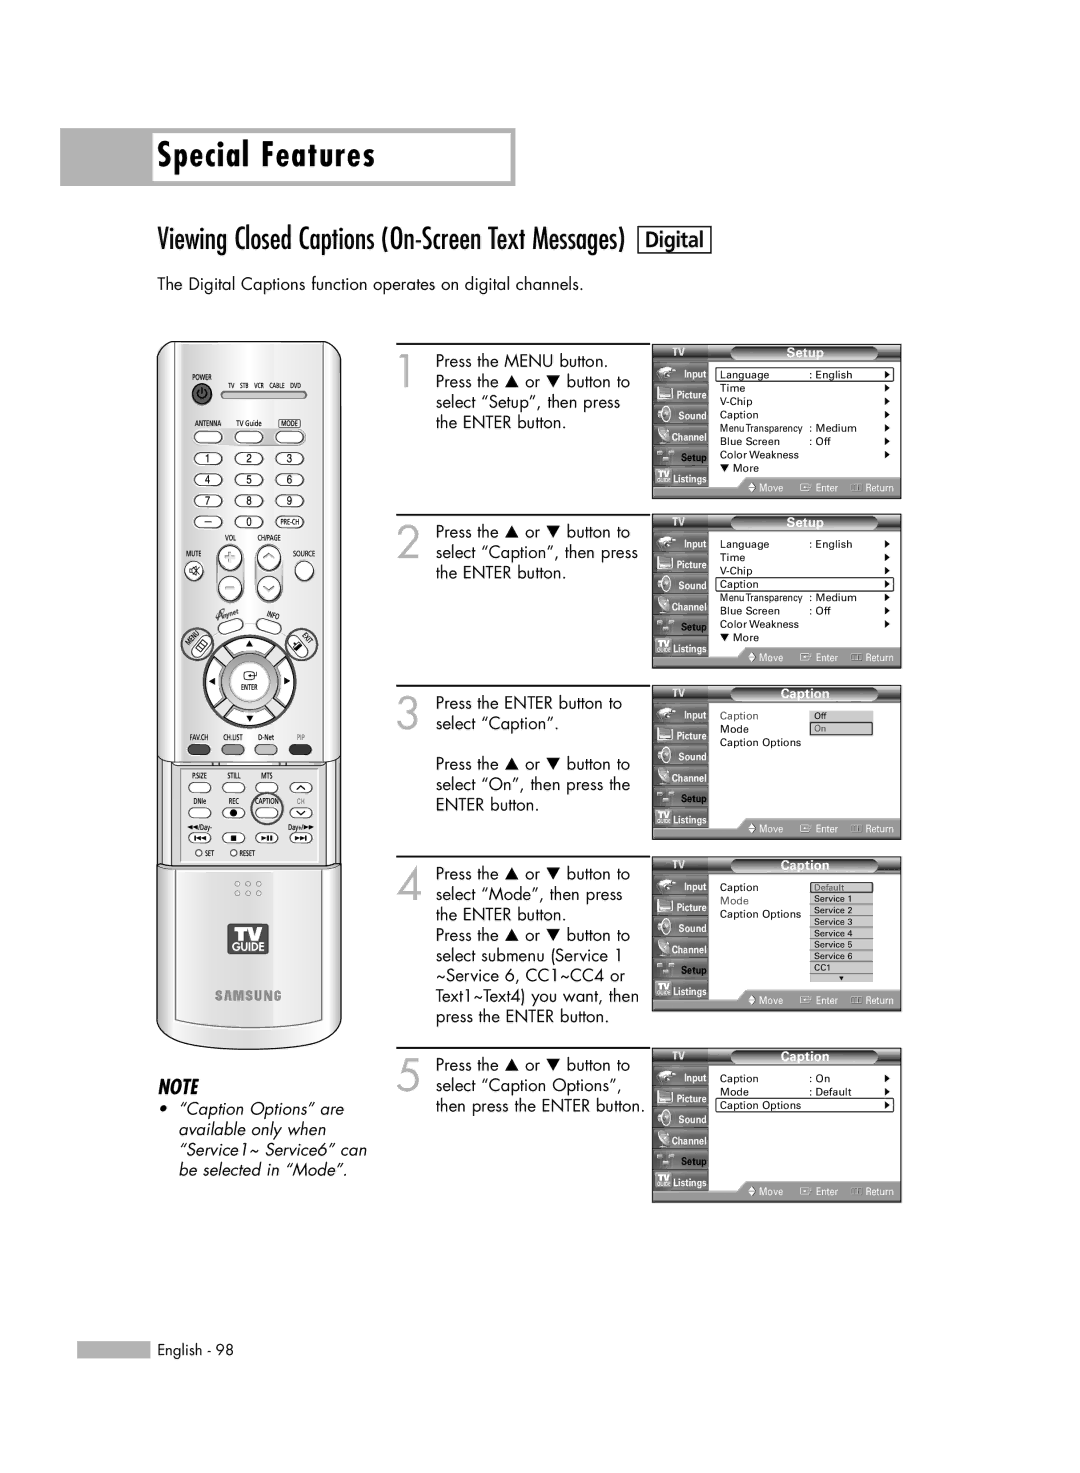 Samsung HL-R5667W, HL-R6167W, HL-R5067W manual Digital Captions function operates on digital channels 